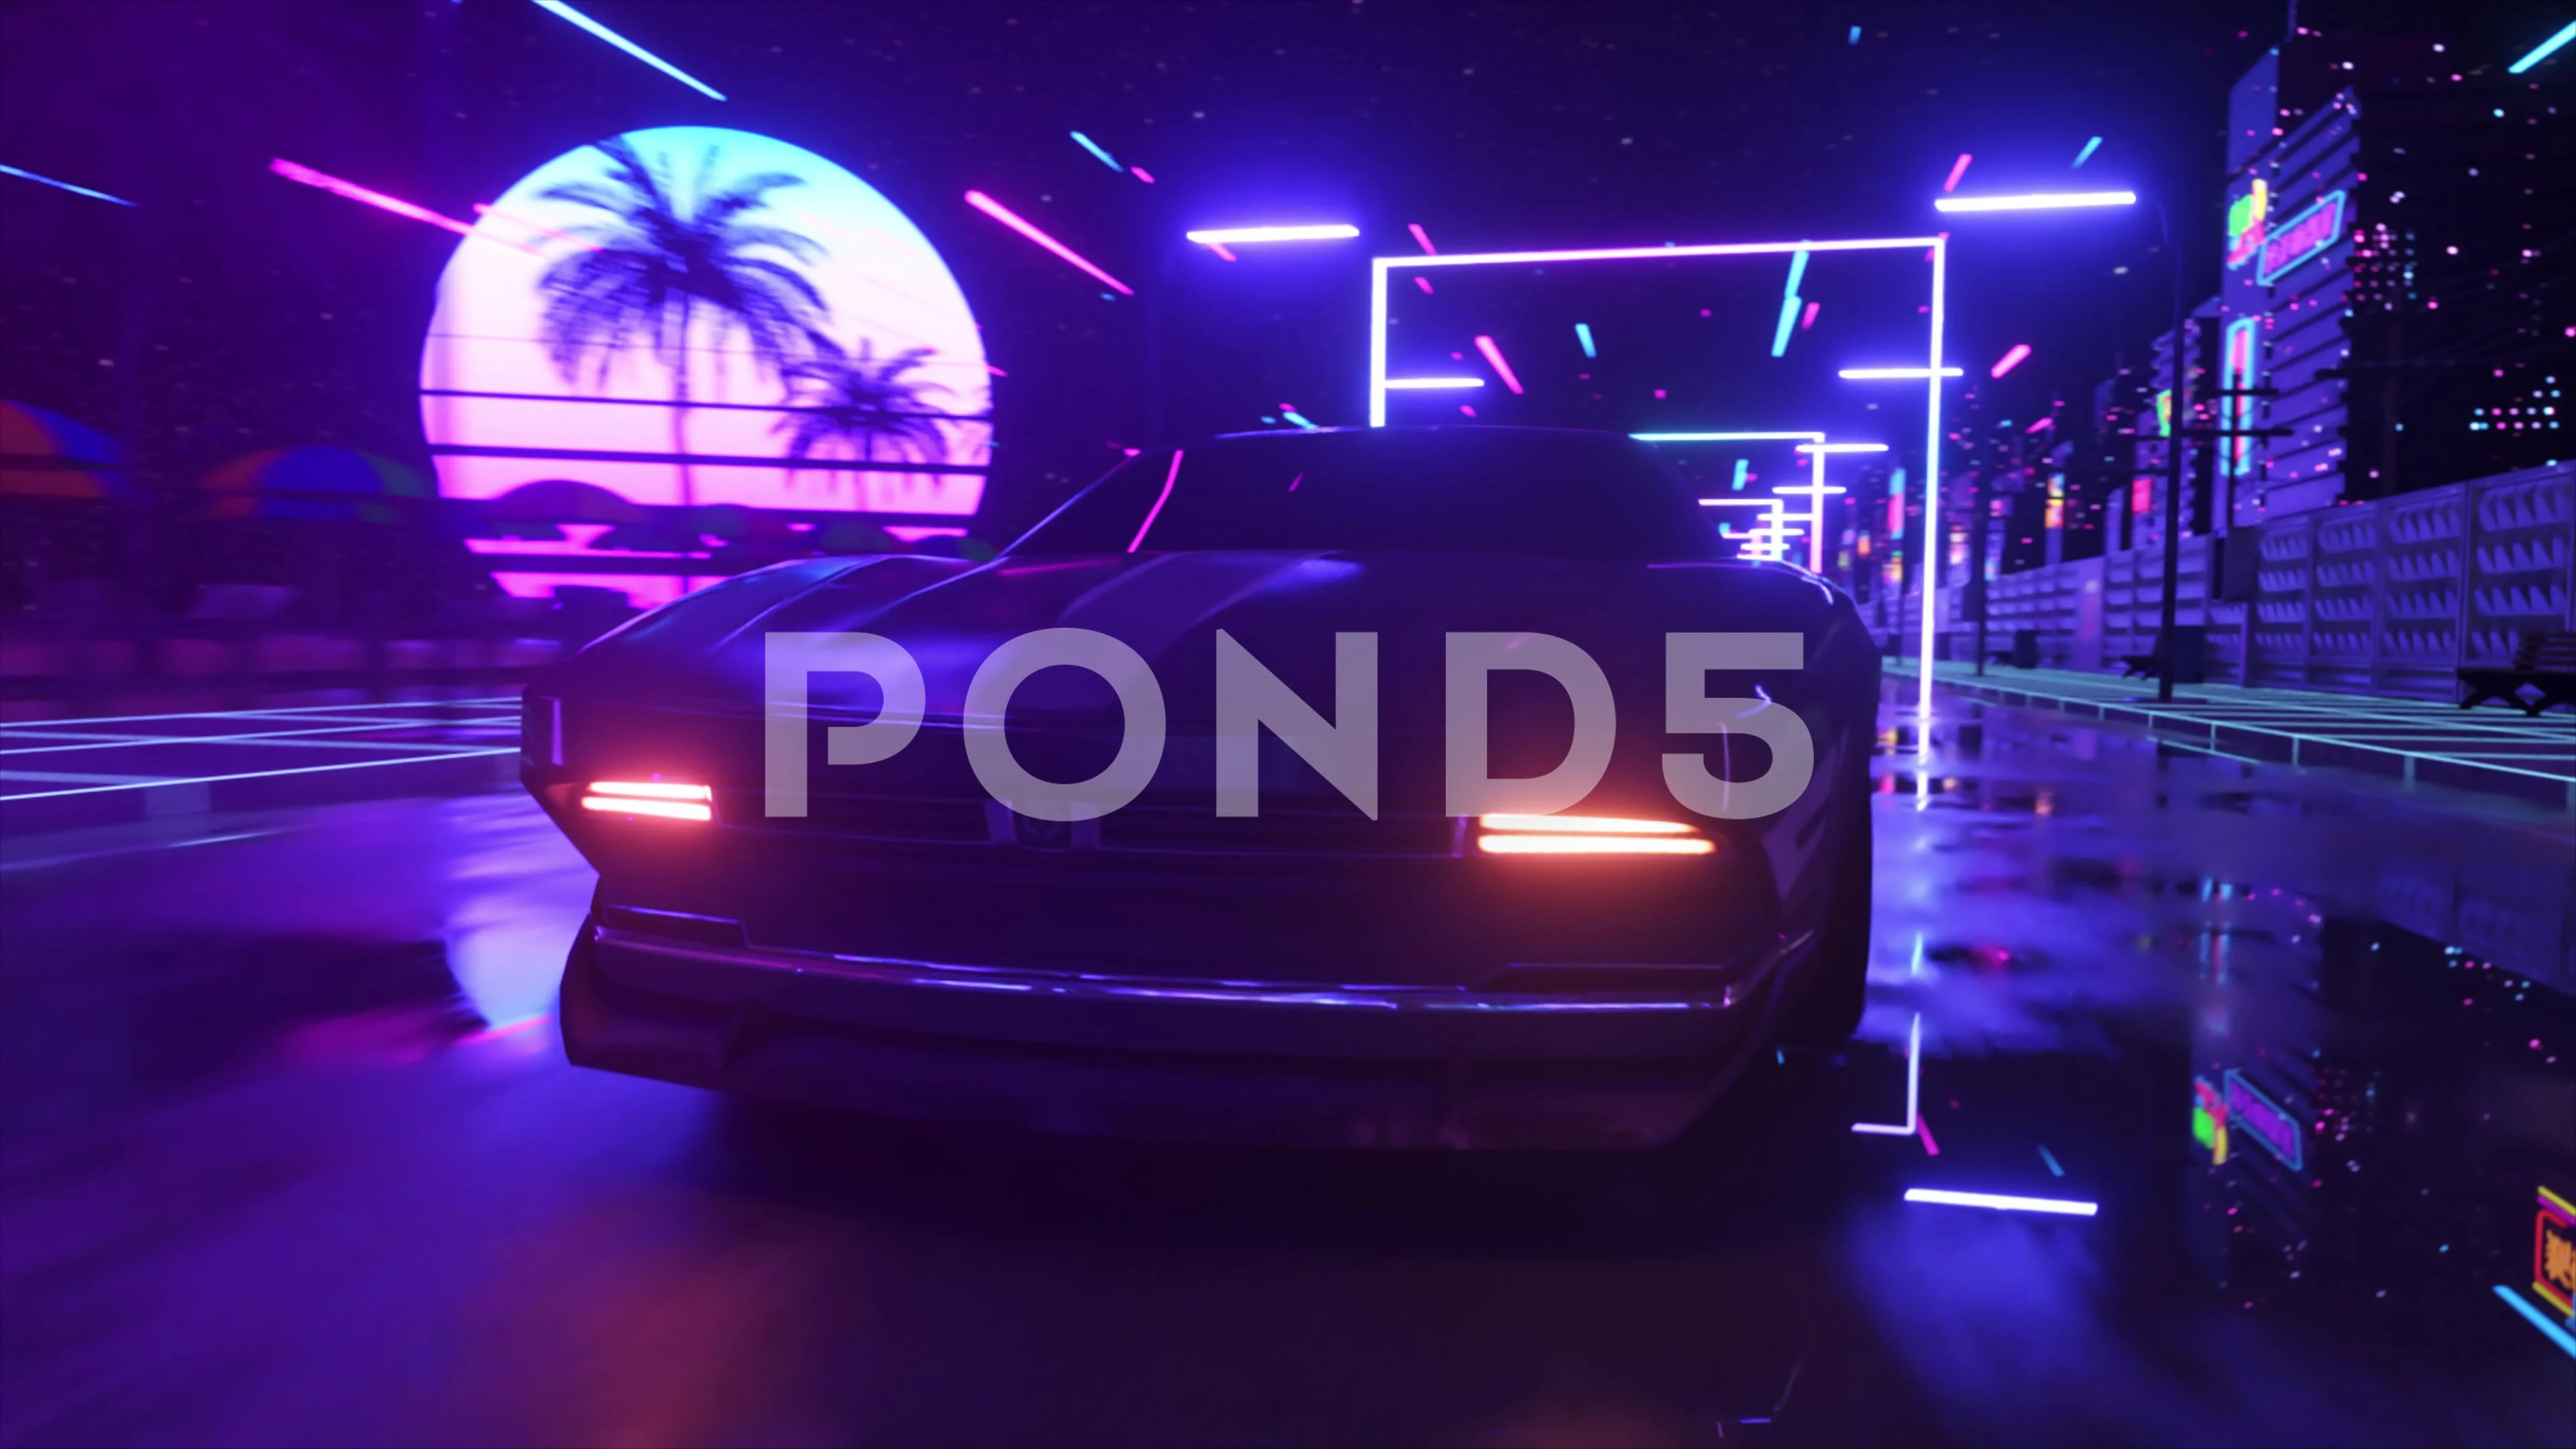 Driving In Retro Futuristic Neon City Screensaver 4K on Make a GIF